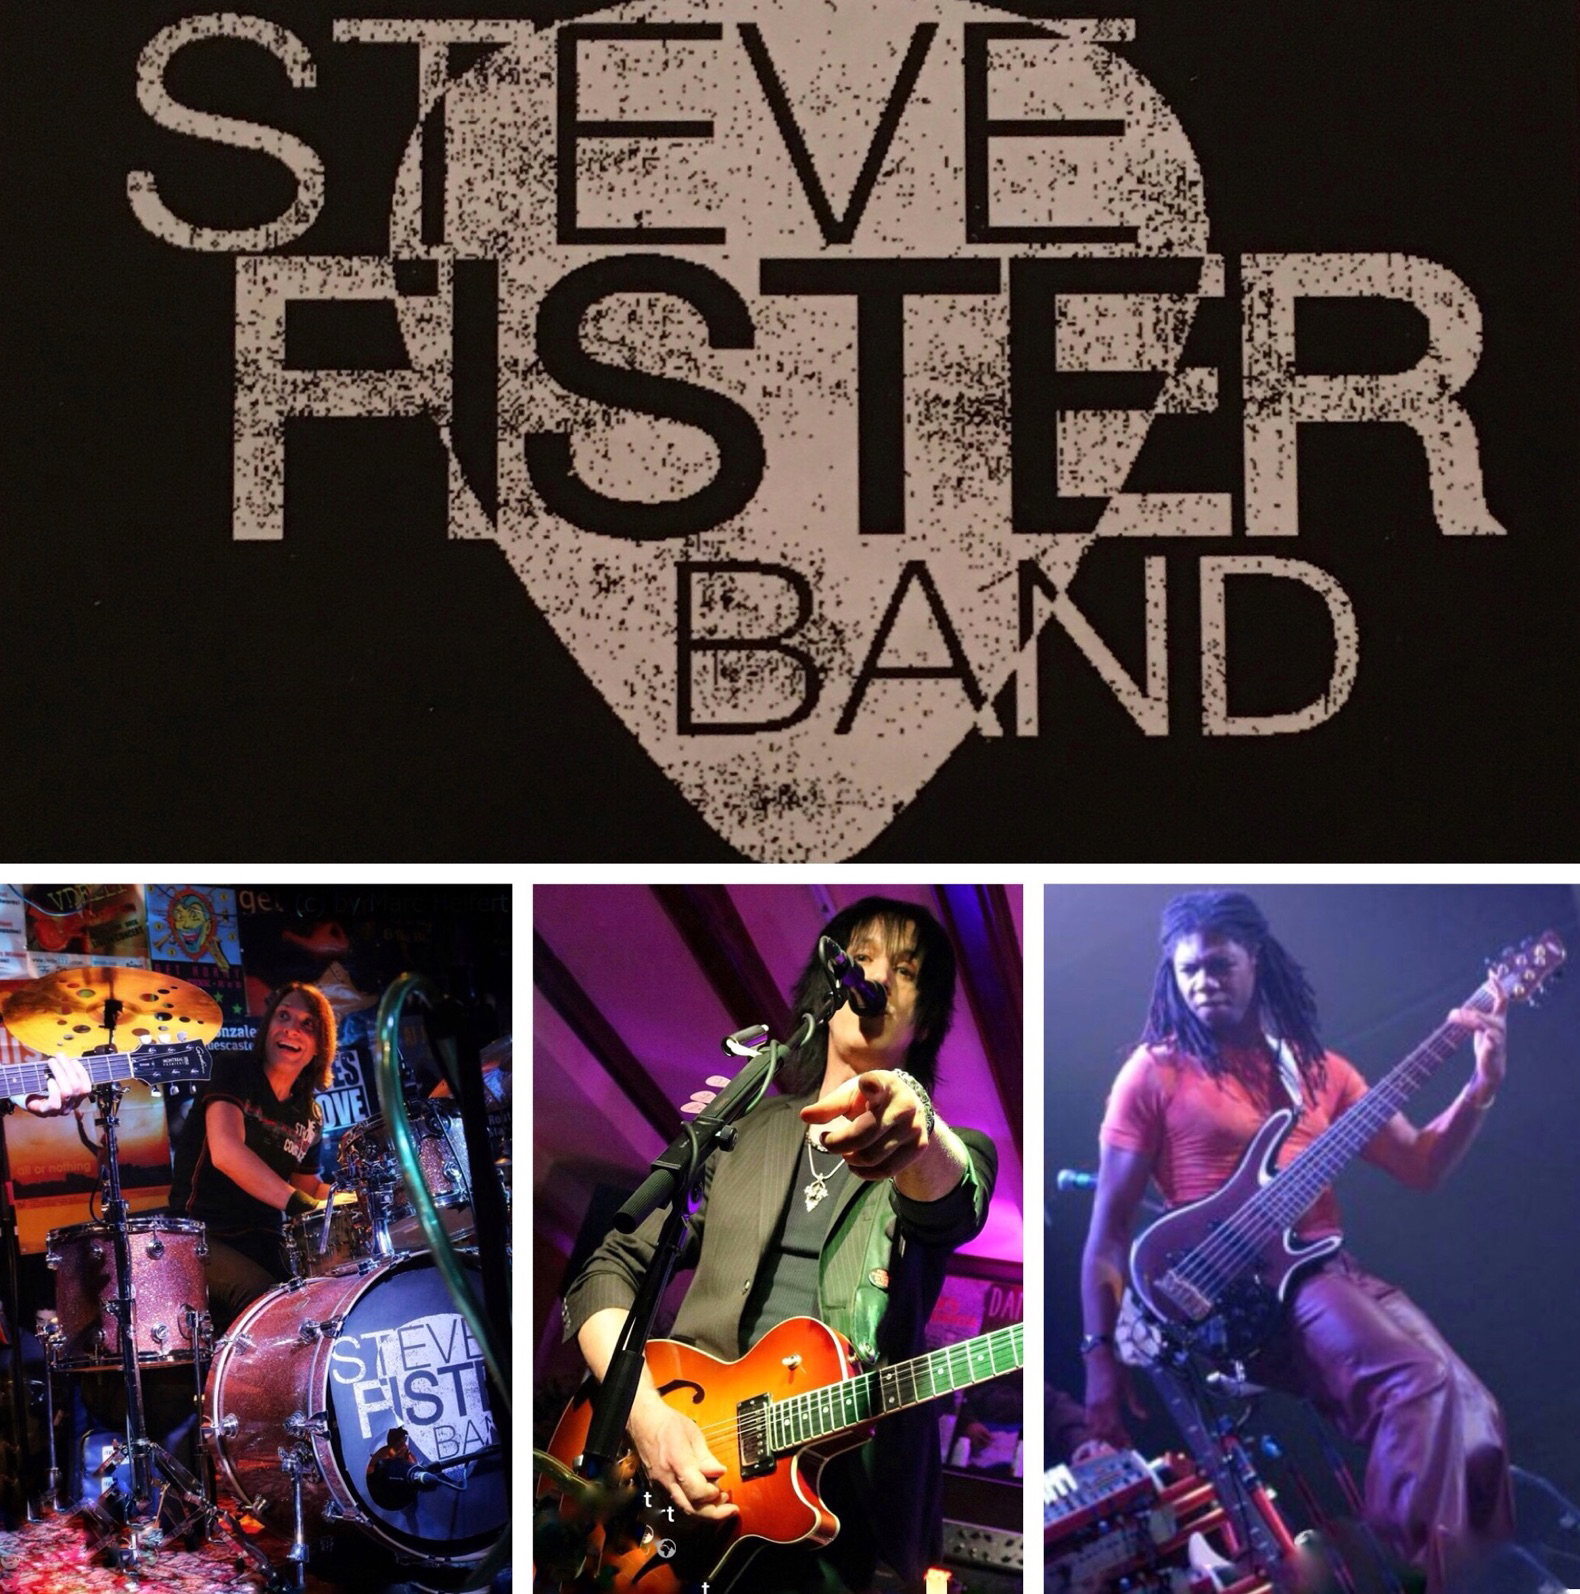 Steve Fister Band